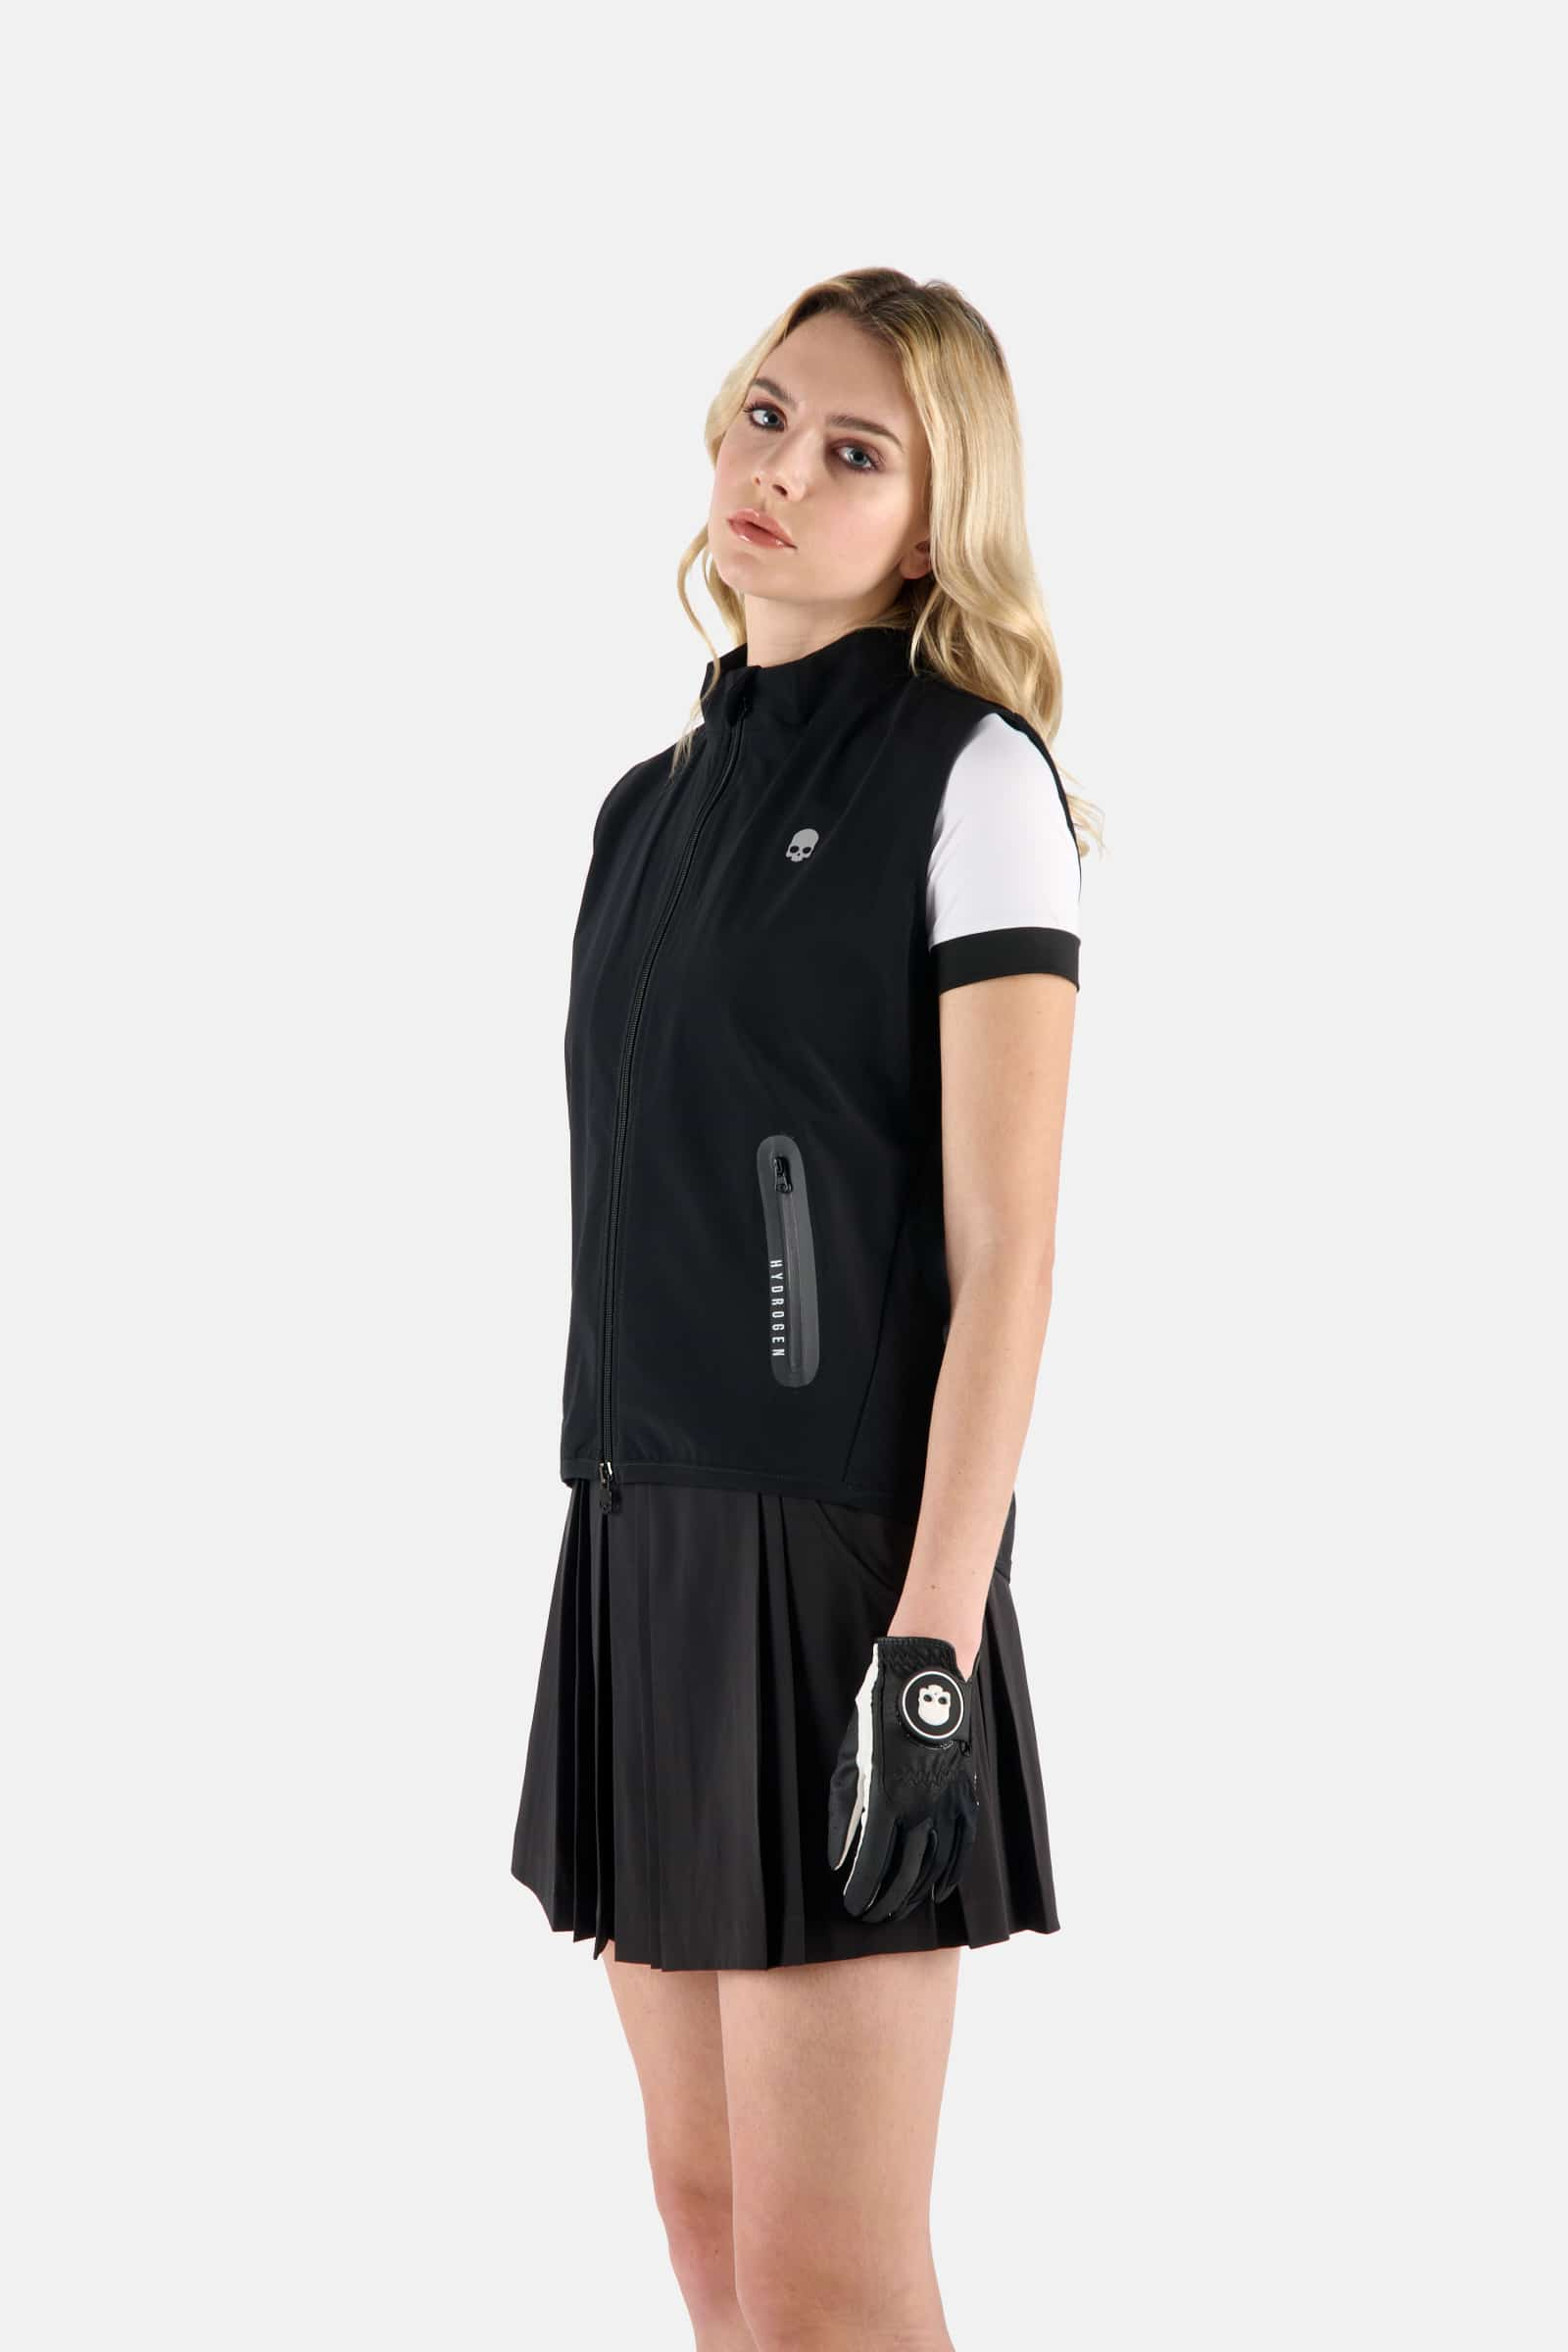 GOLF SKULL VEST - BLACK - Hydrogen - Luxury Sportwear